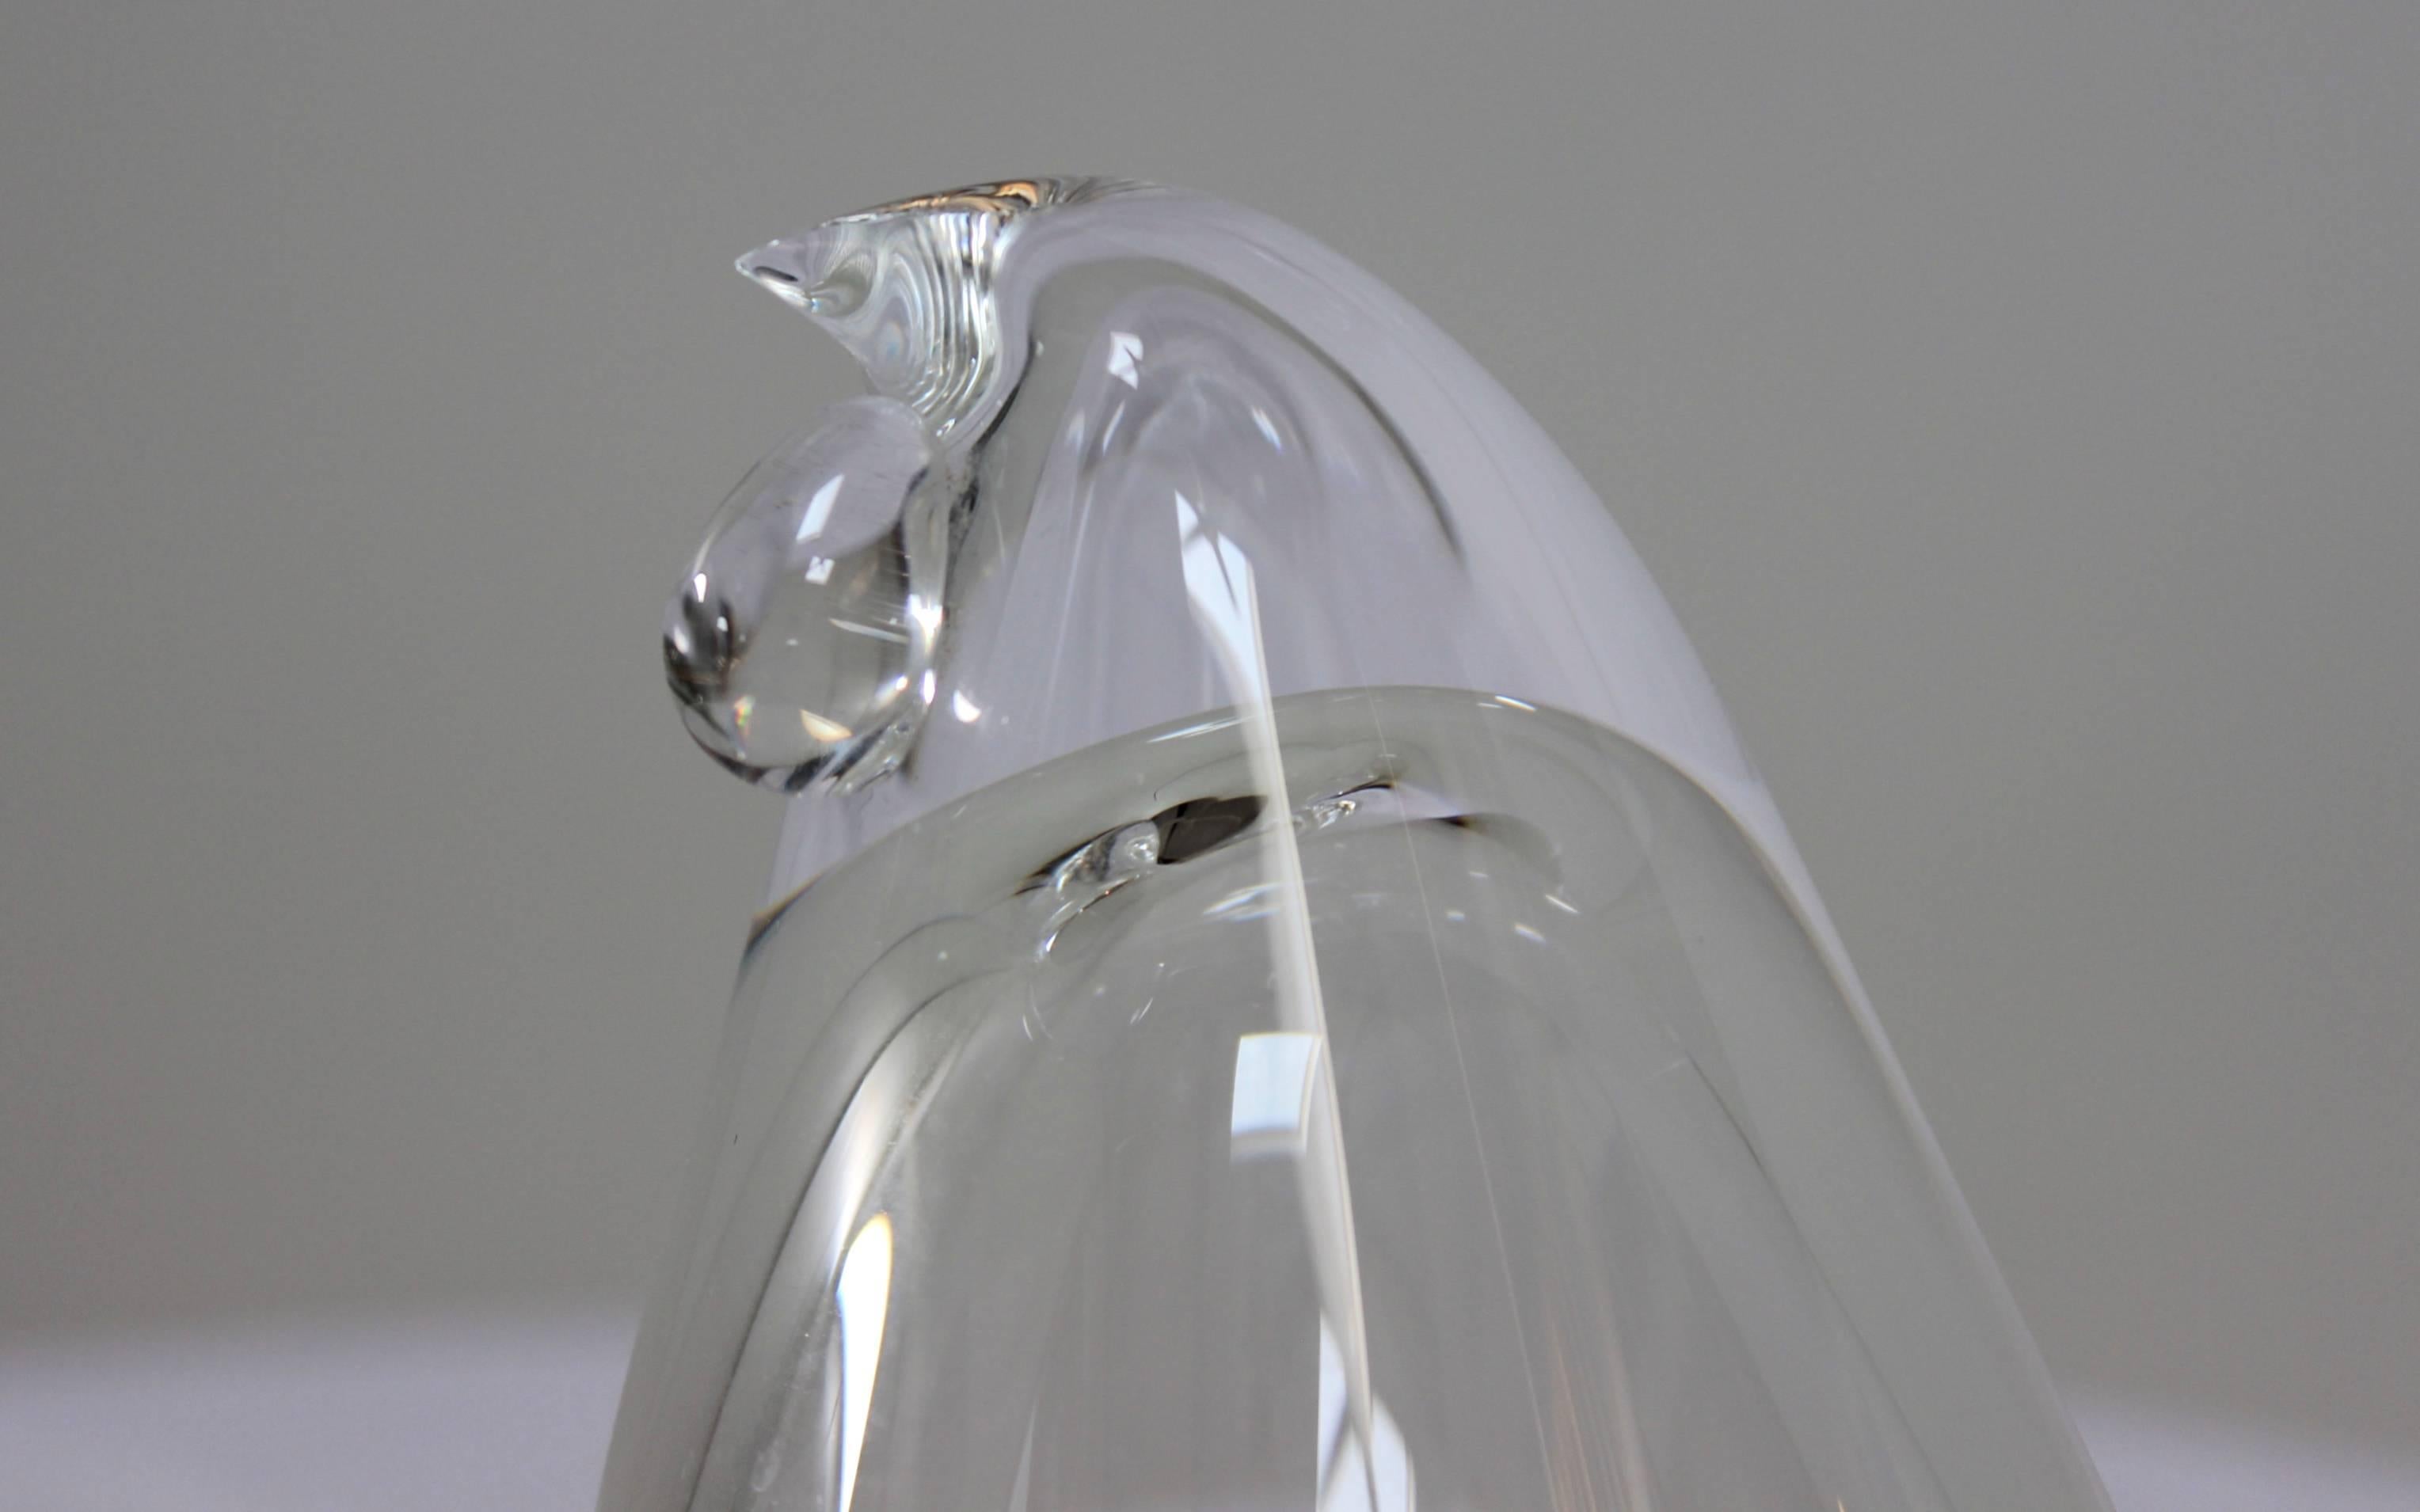 1970s Steuben glass bird sculpture.